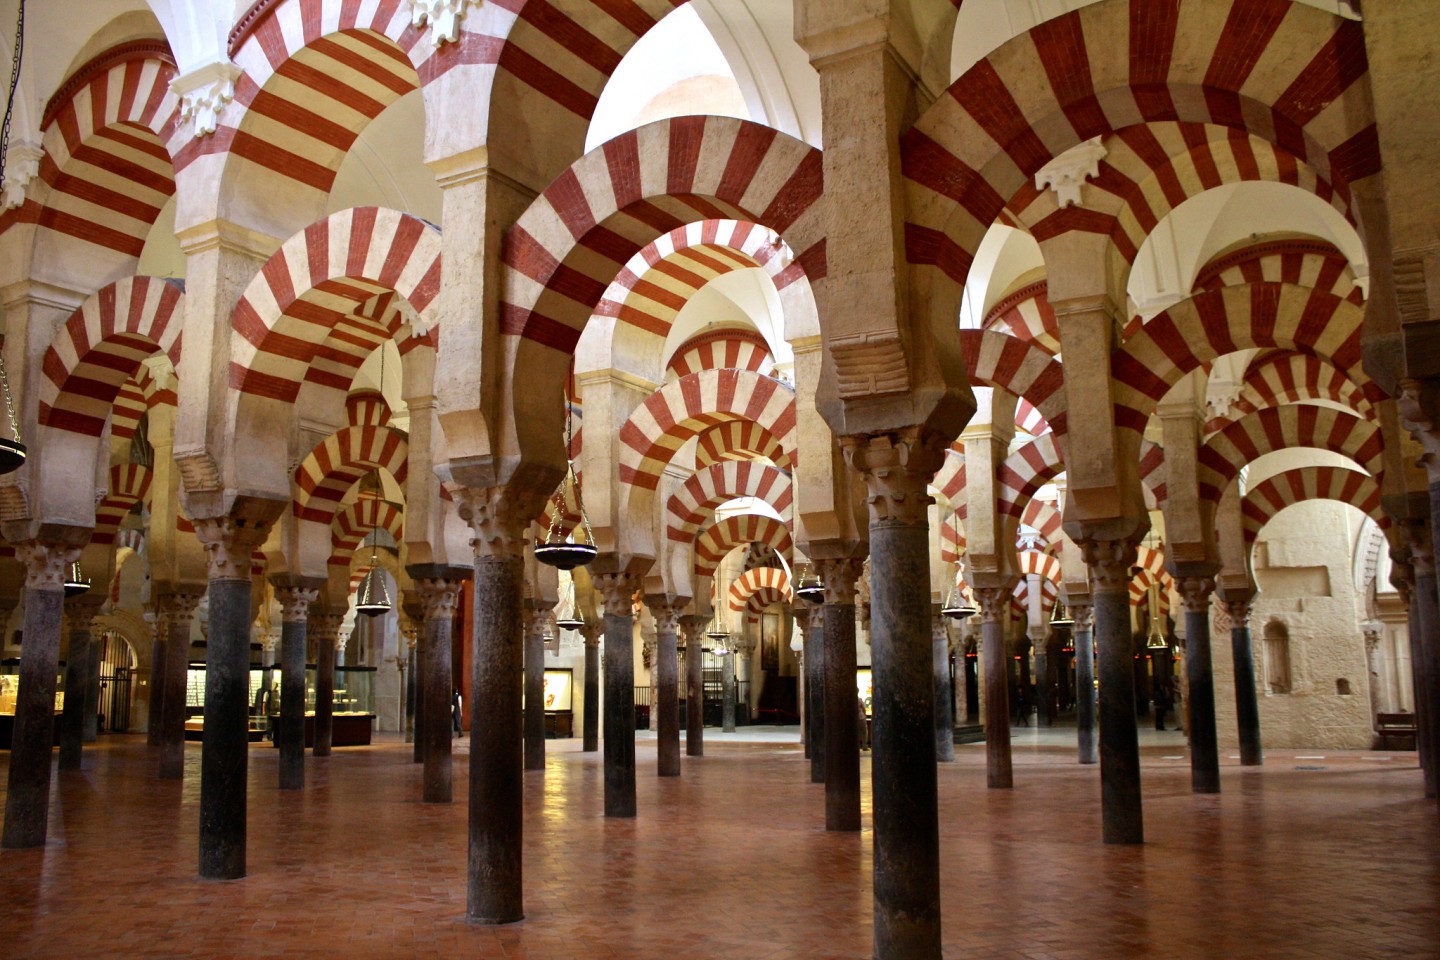 Mezquita w Kordobie w hiszpańskiej Andaluzji